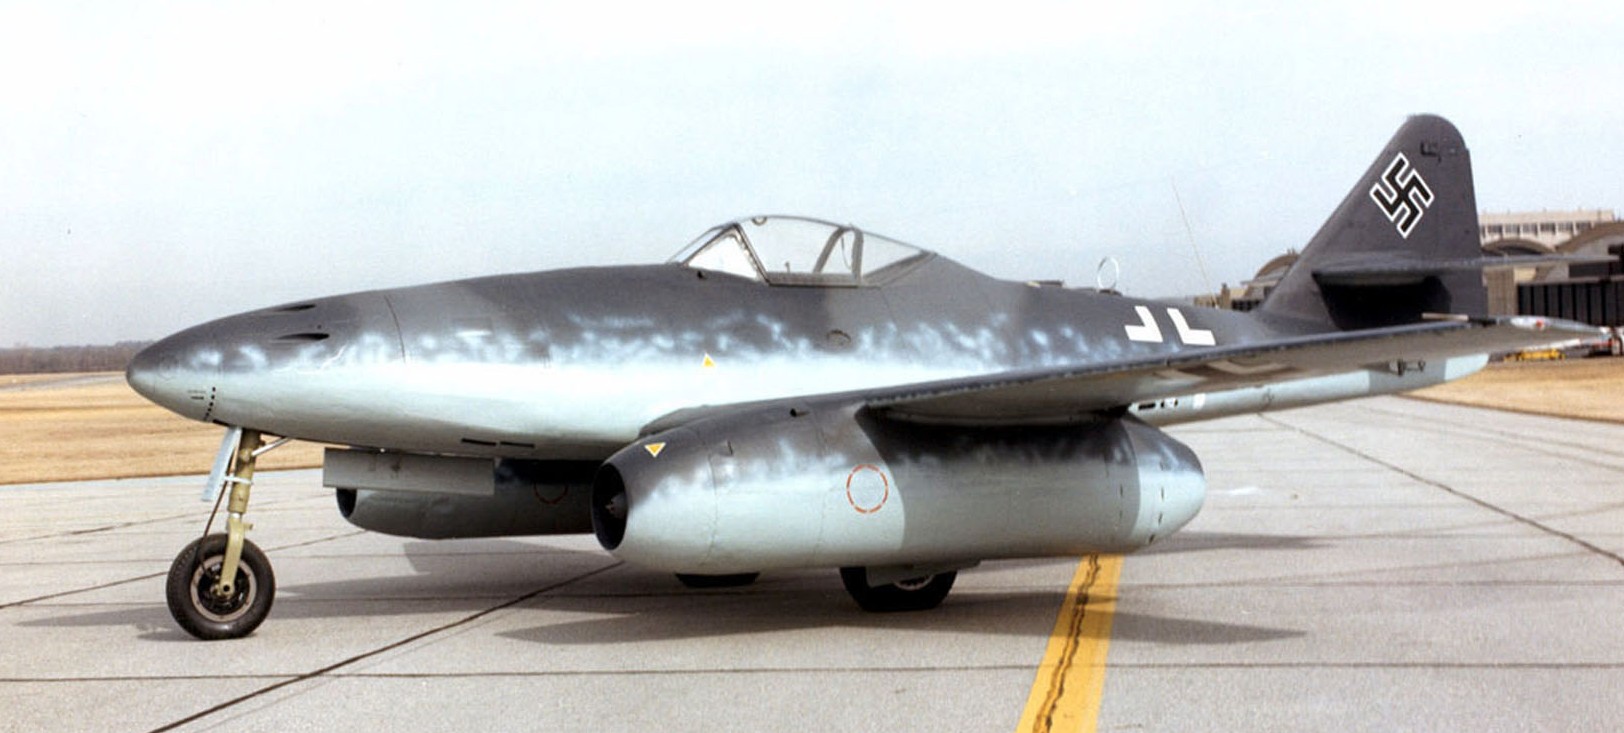 Messerschmitt_Me_262A_at_the_National_Museum_of_the_USAF-e1427480874975.jpg